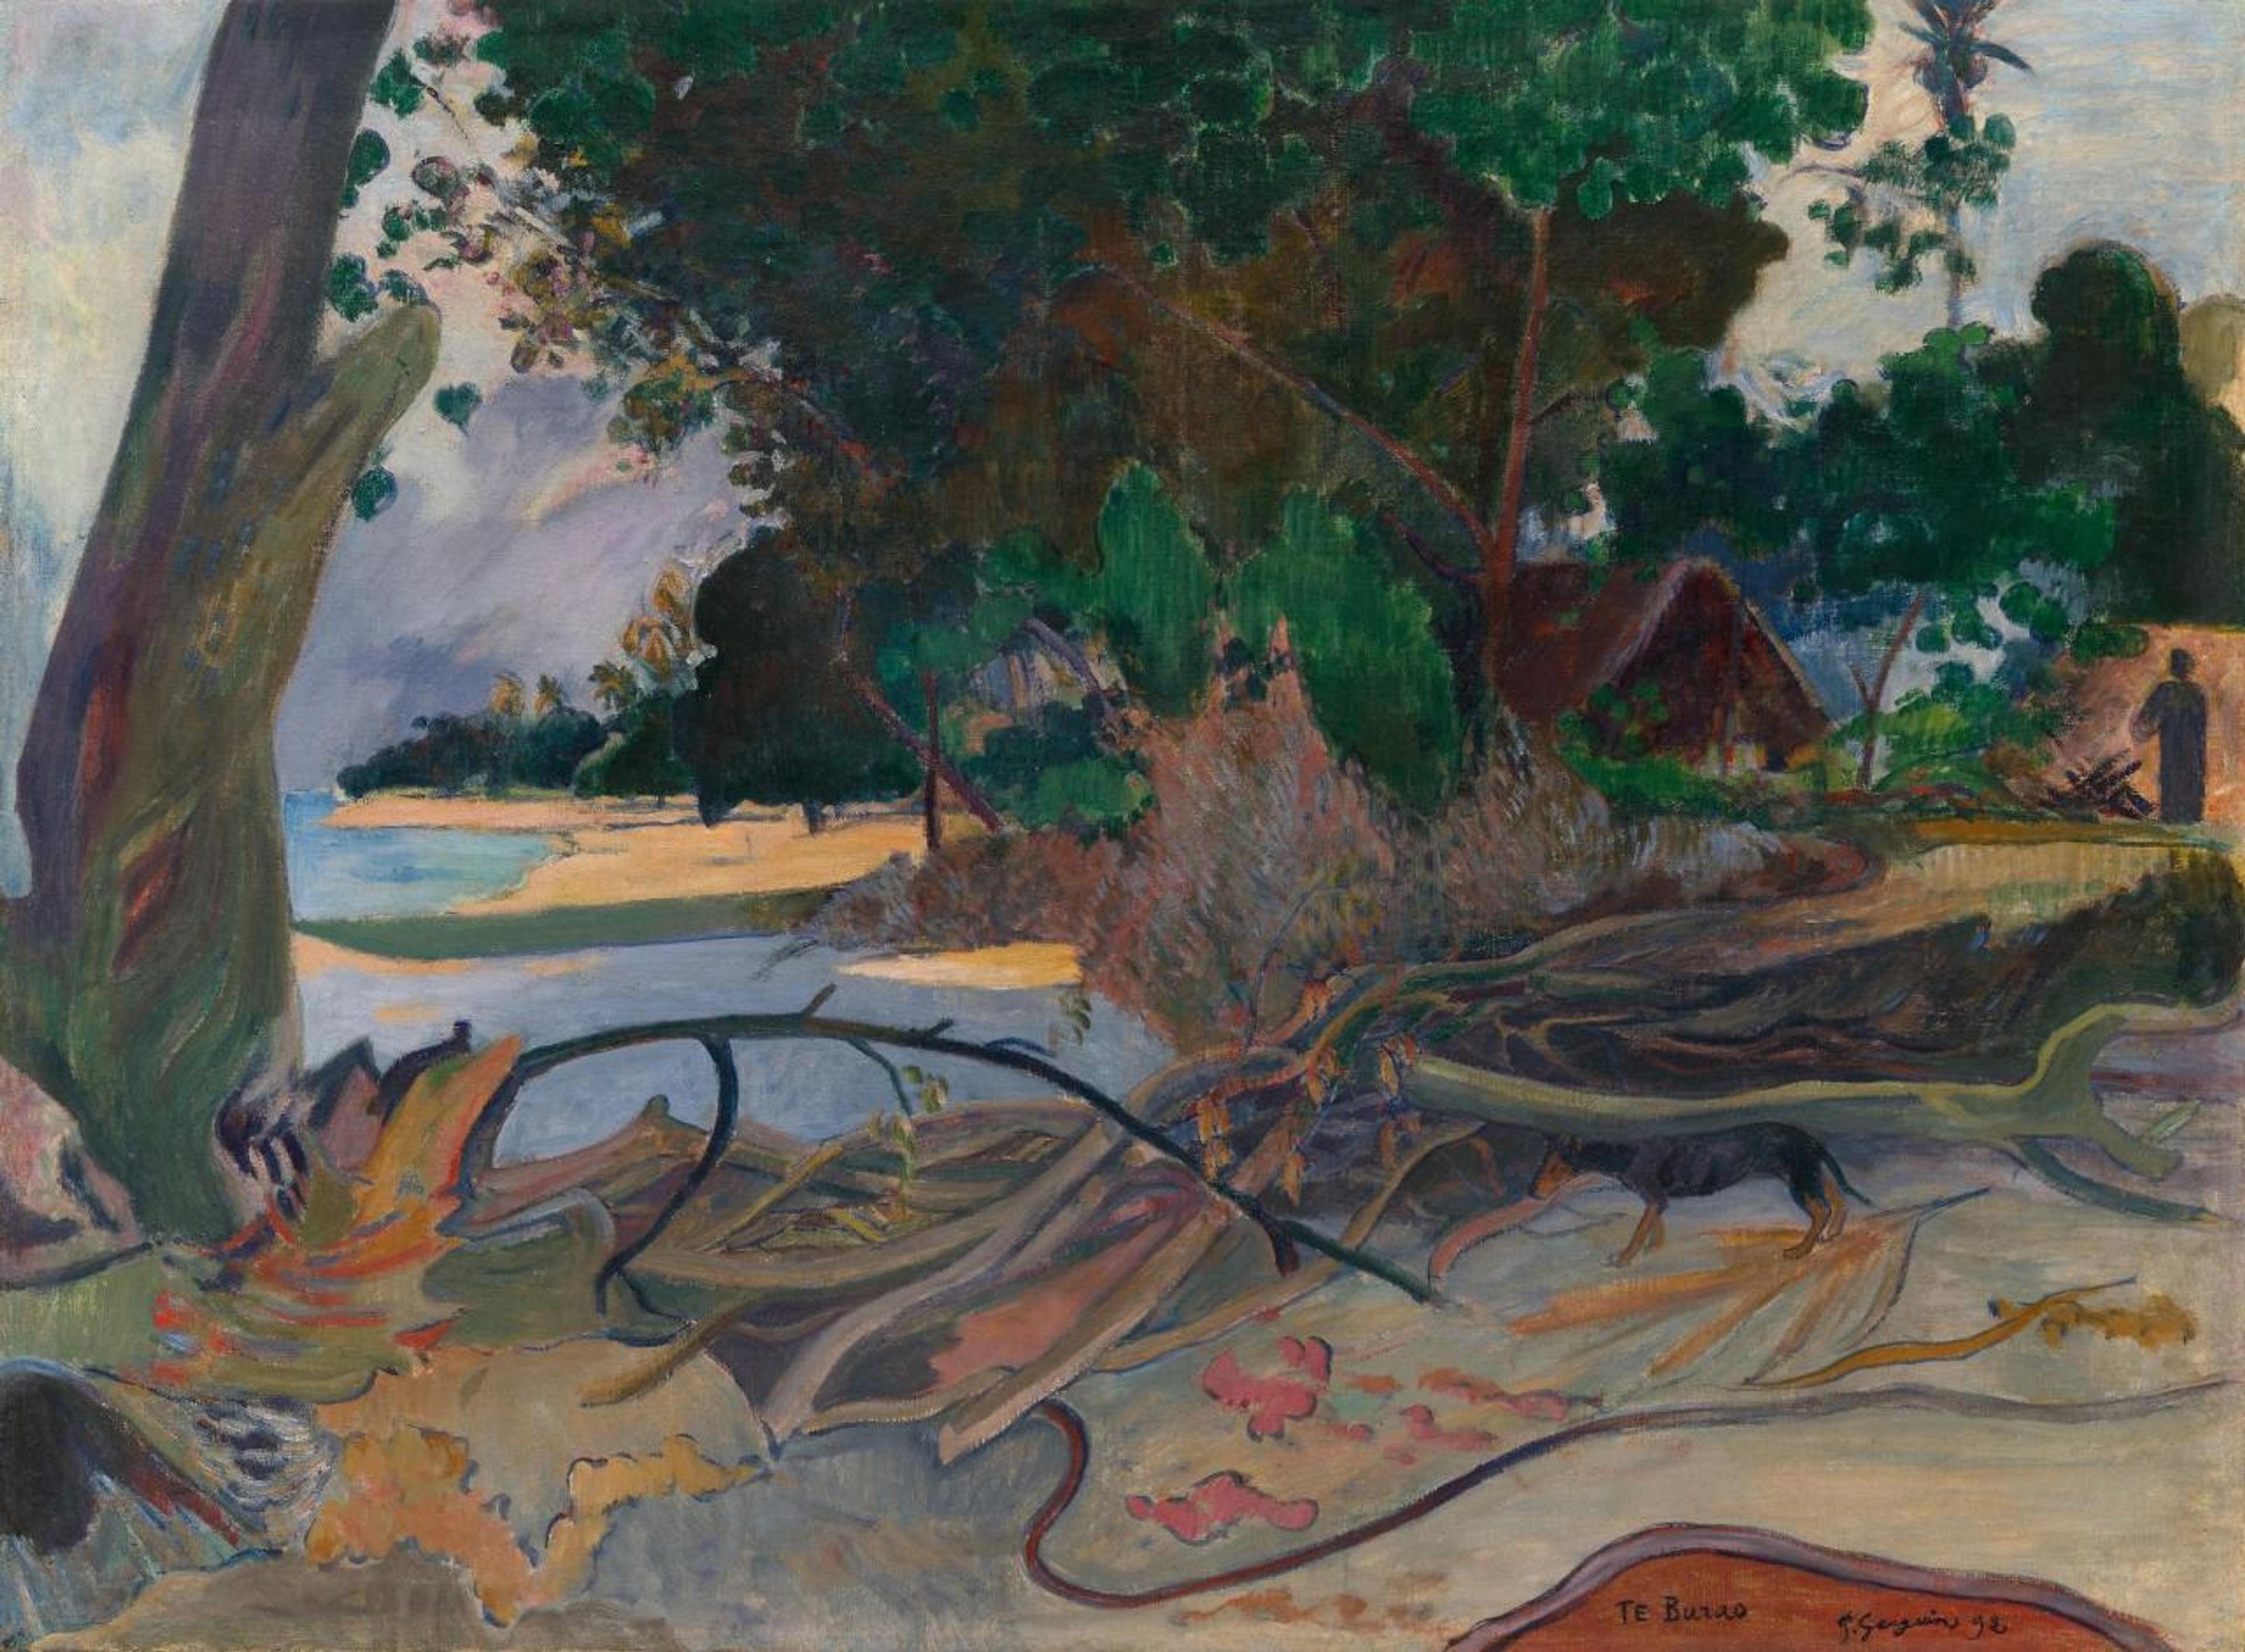 Paul Gauguin, Te burao (The Hibiscus Tree), 1923